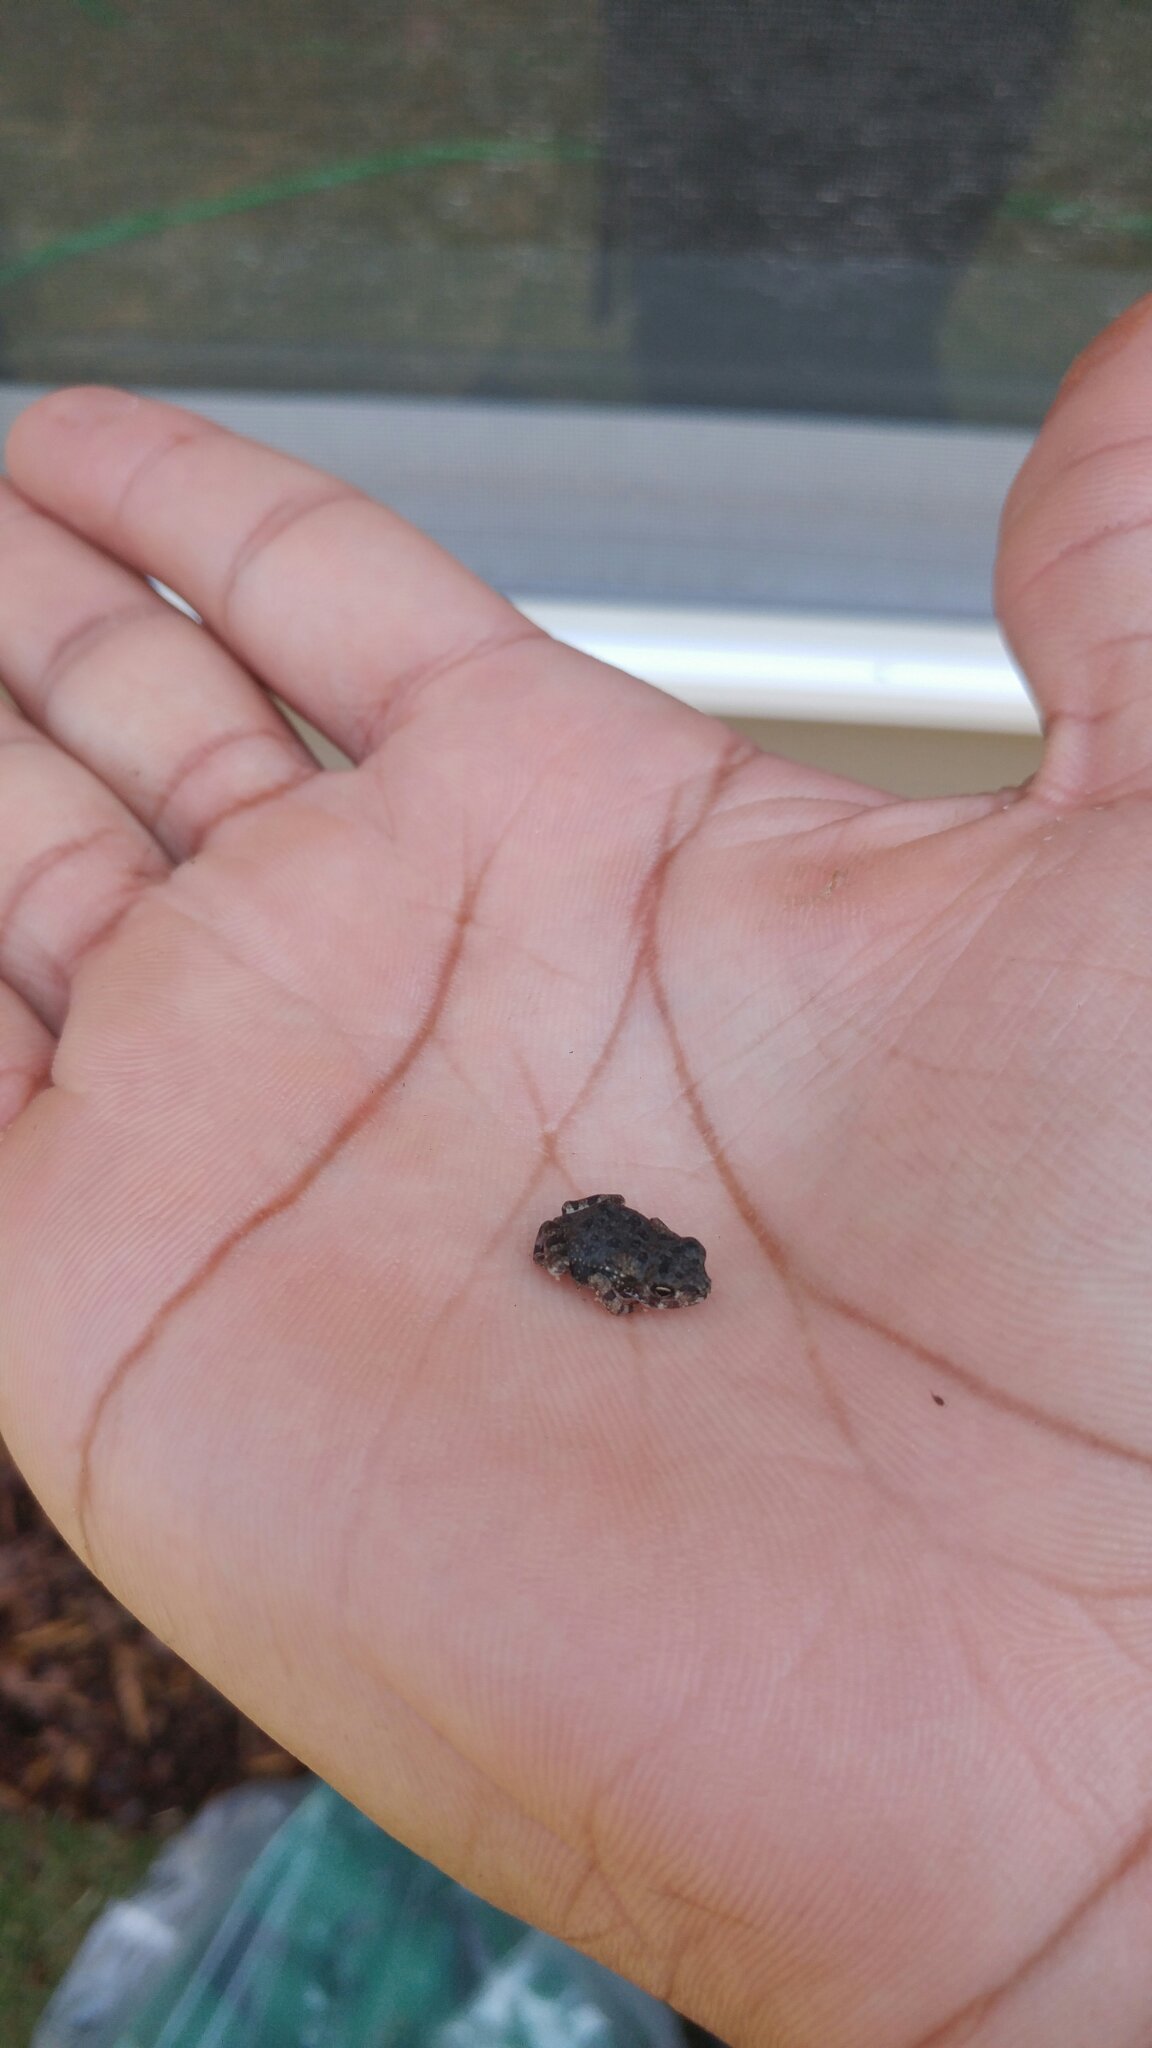 World's smallest frog - meme